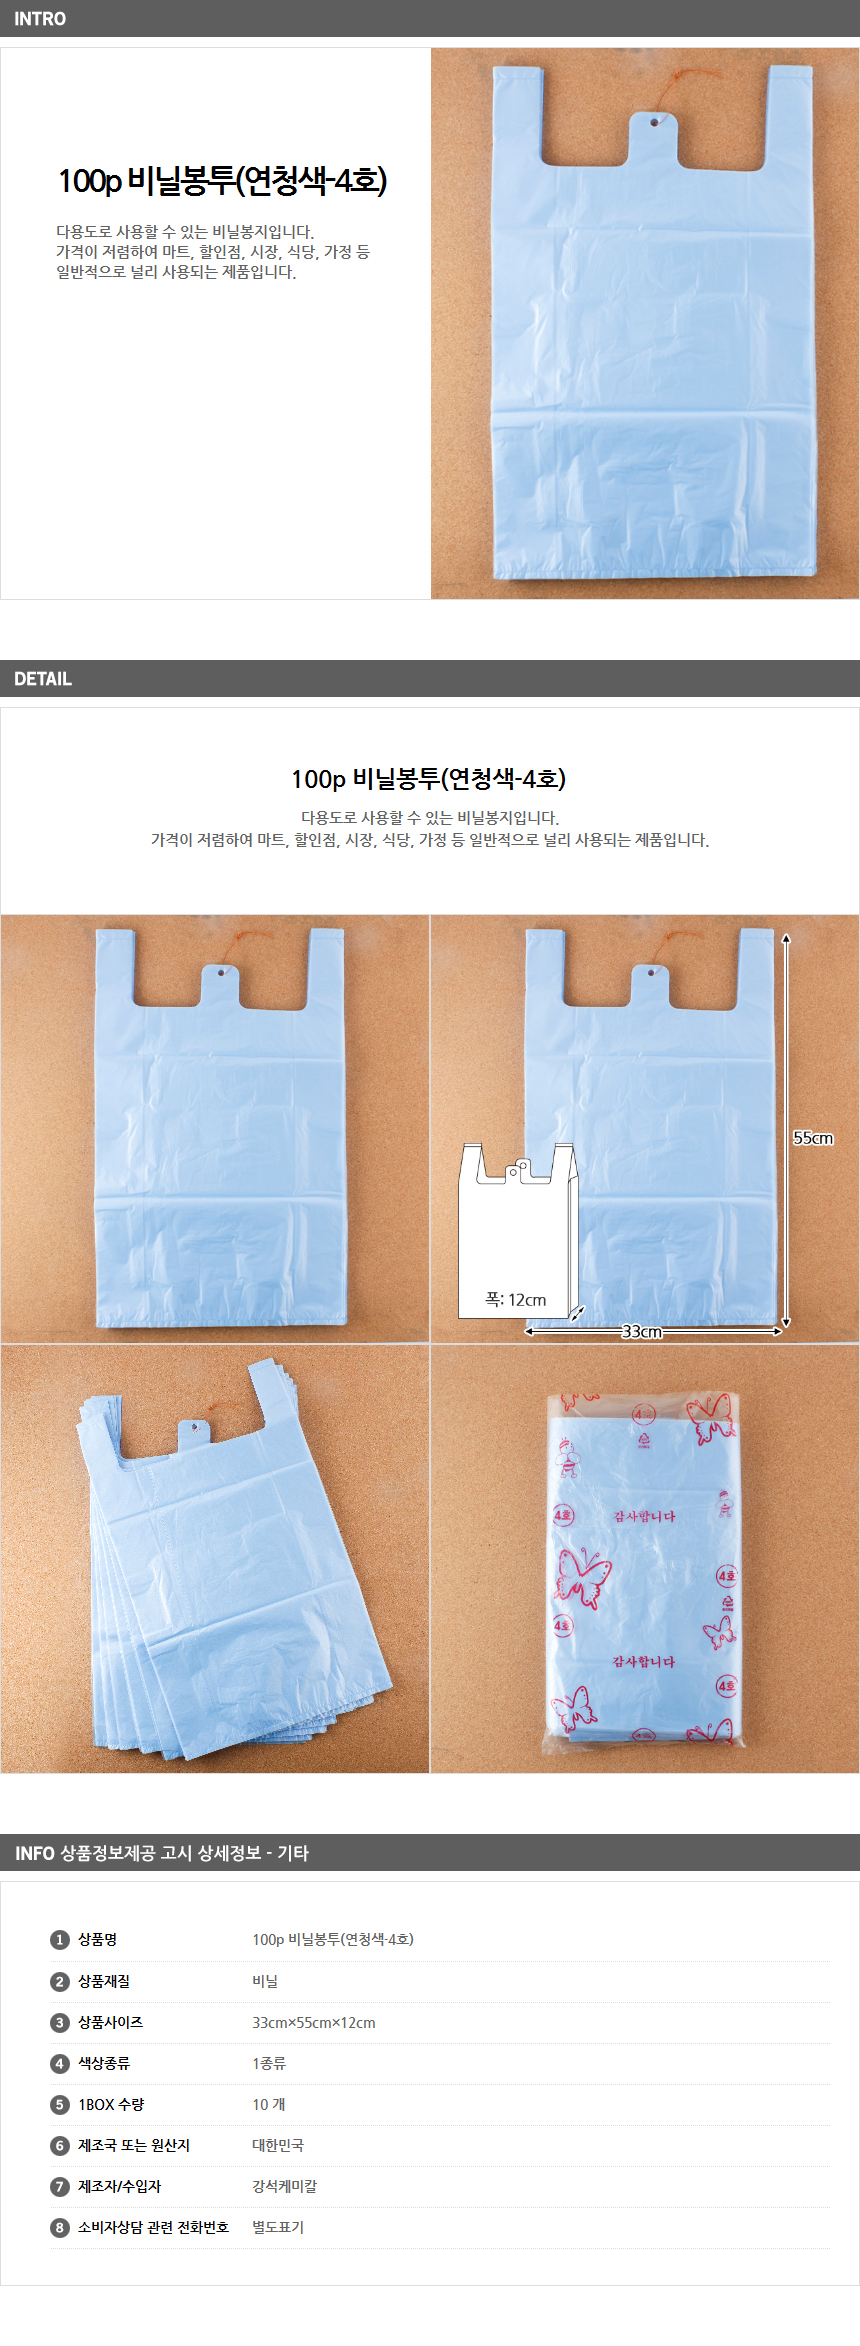 100p 마트비닐봉투 4호/팬시점 시장비닐봉지